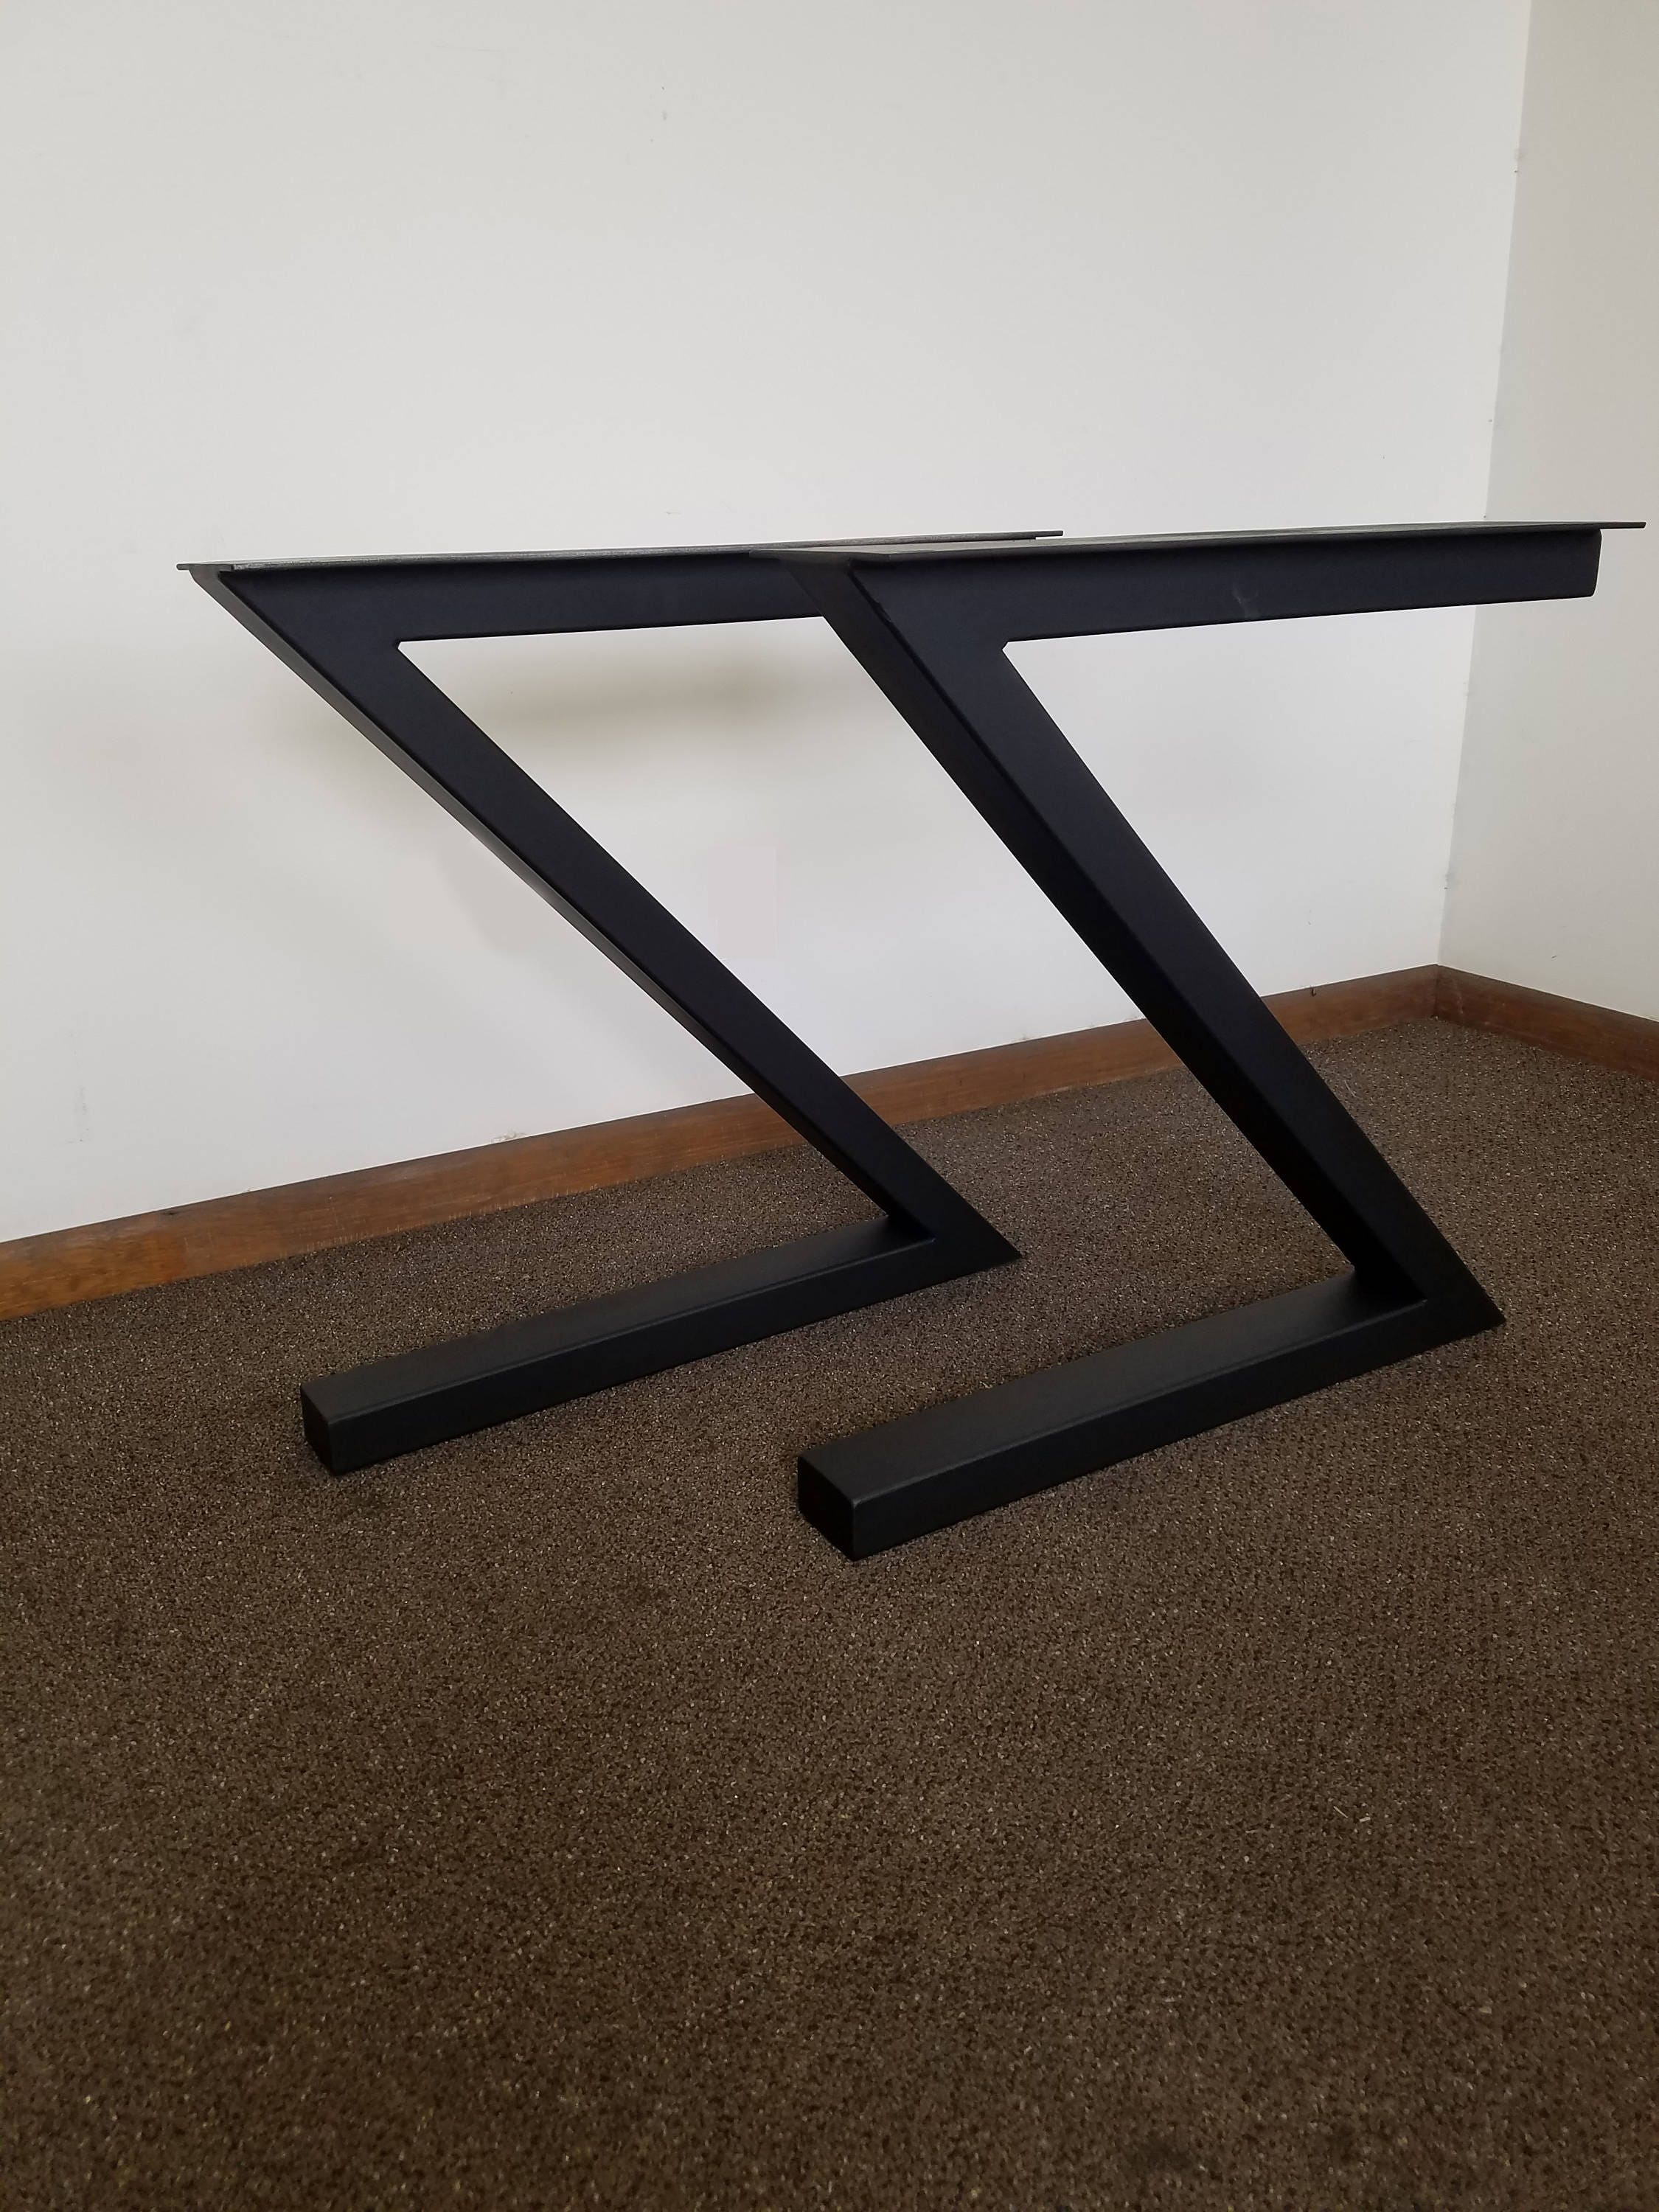 Z Shaped Steel Metal Table Desk Bench Legs